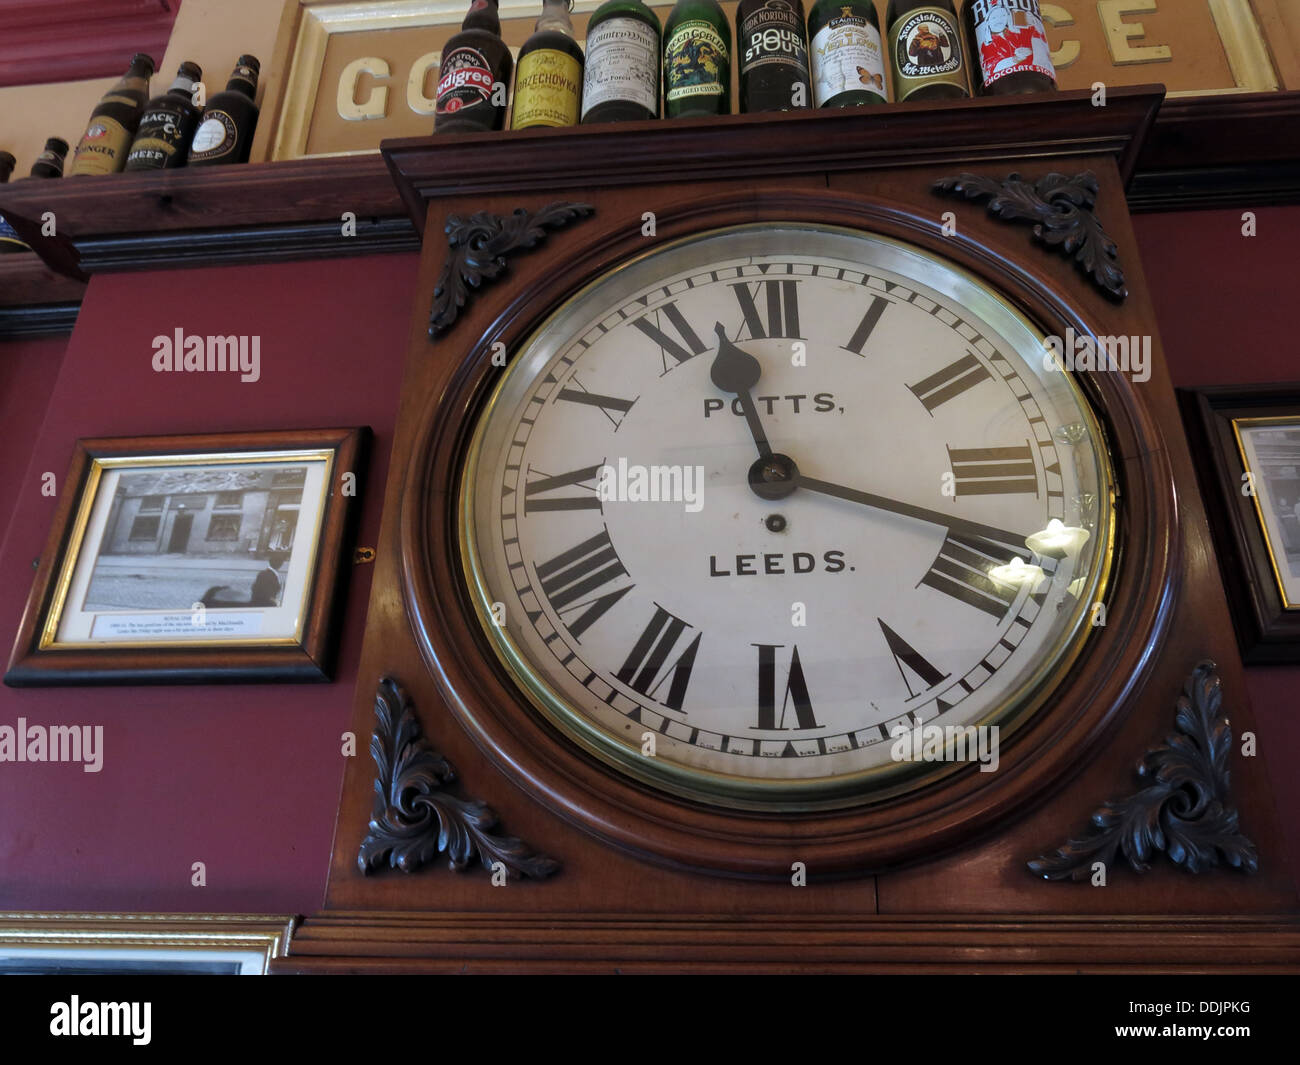 Potts Leeds Uhr Dewsbury Westreiten Pub Erfrischung Räume, West Yorks, England, UK Stockfoto